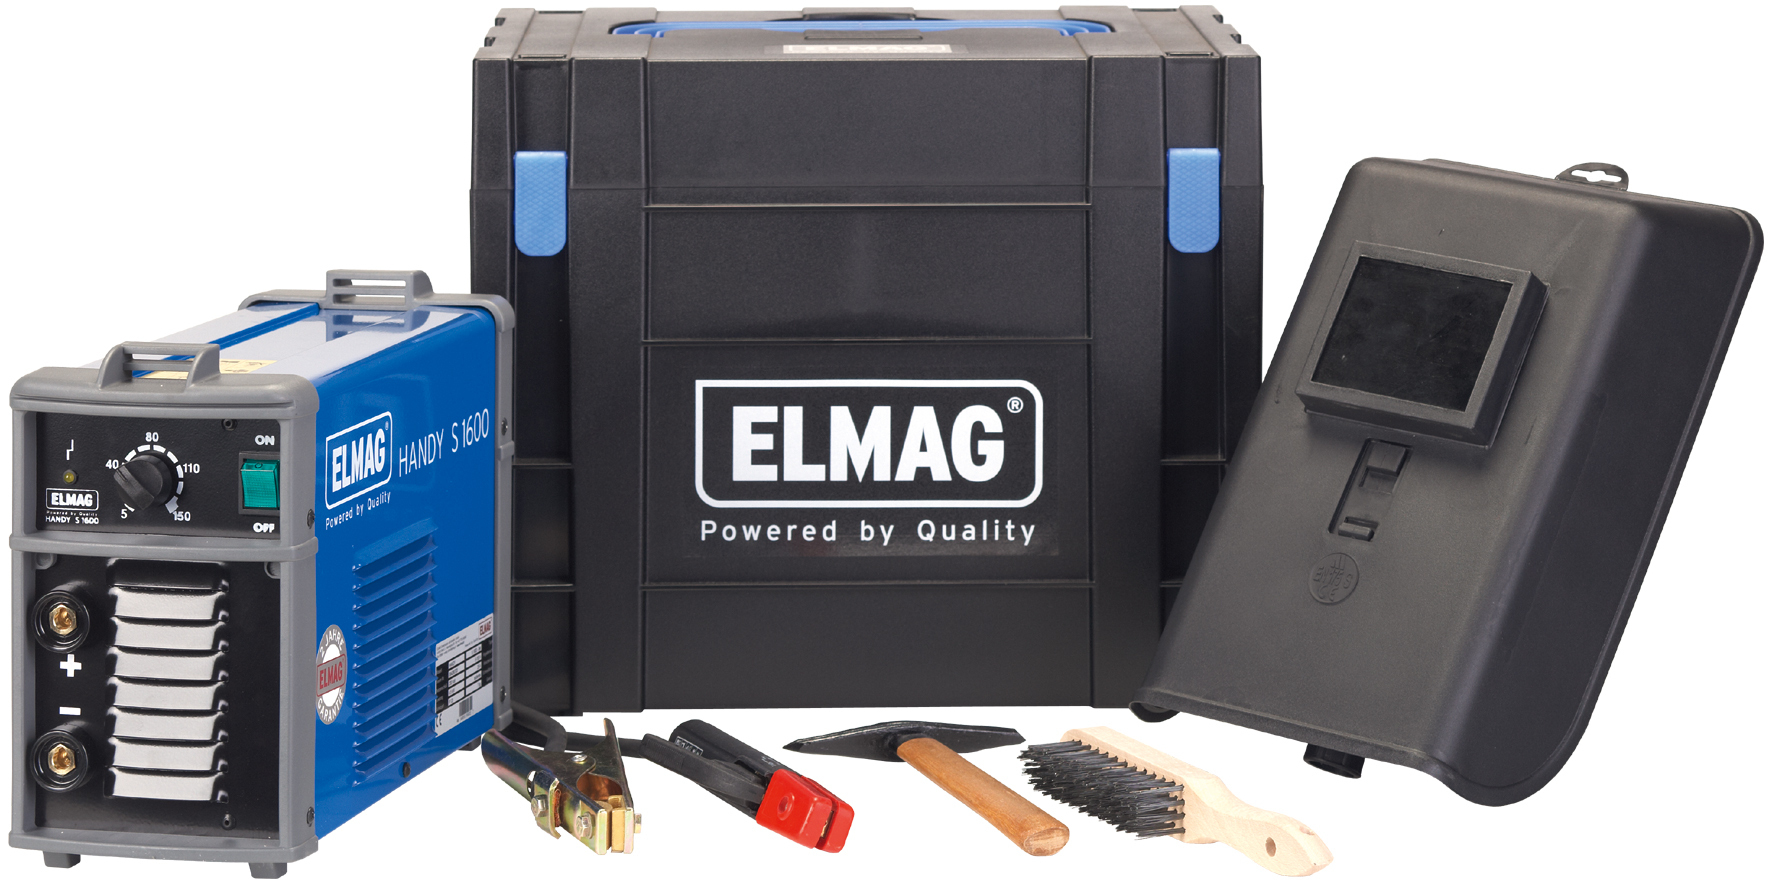 ELMAG Schweißinverter PUMA S1700 Power-Set, 5-160A, Ø1,6-4,0mm Elektroden, 230V/16A, 6,6kg